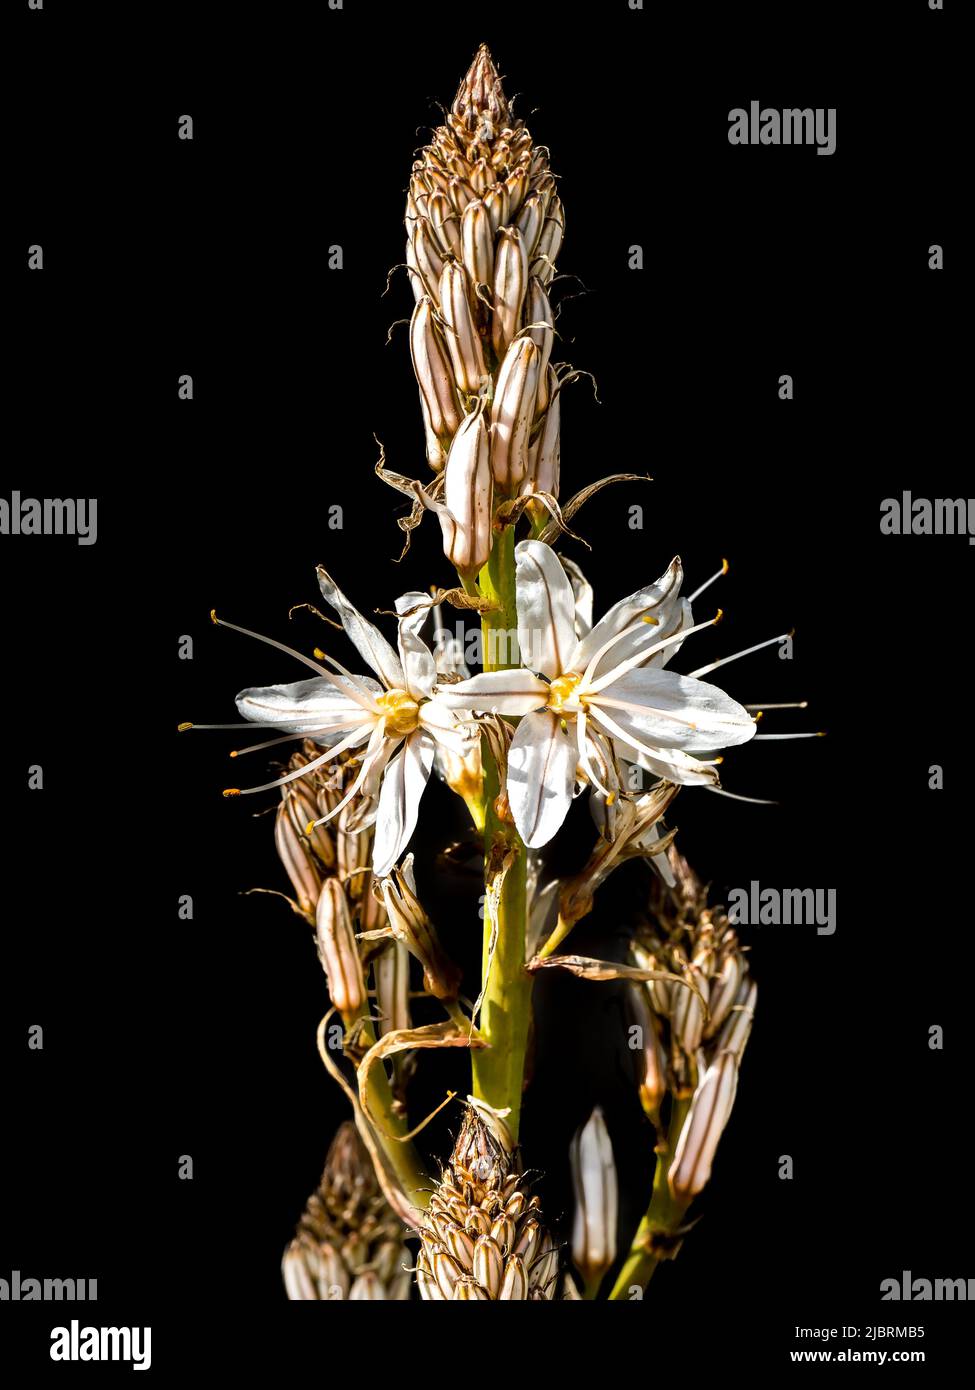 Blüten und Knospen einer mehrjährigen krautigen Pflanze in der Reihenfolge der Asparagales, die als weiße Asphodel, Asphodelus ramosus und Asphodelus albus bezeichnet werden. Stockfoto